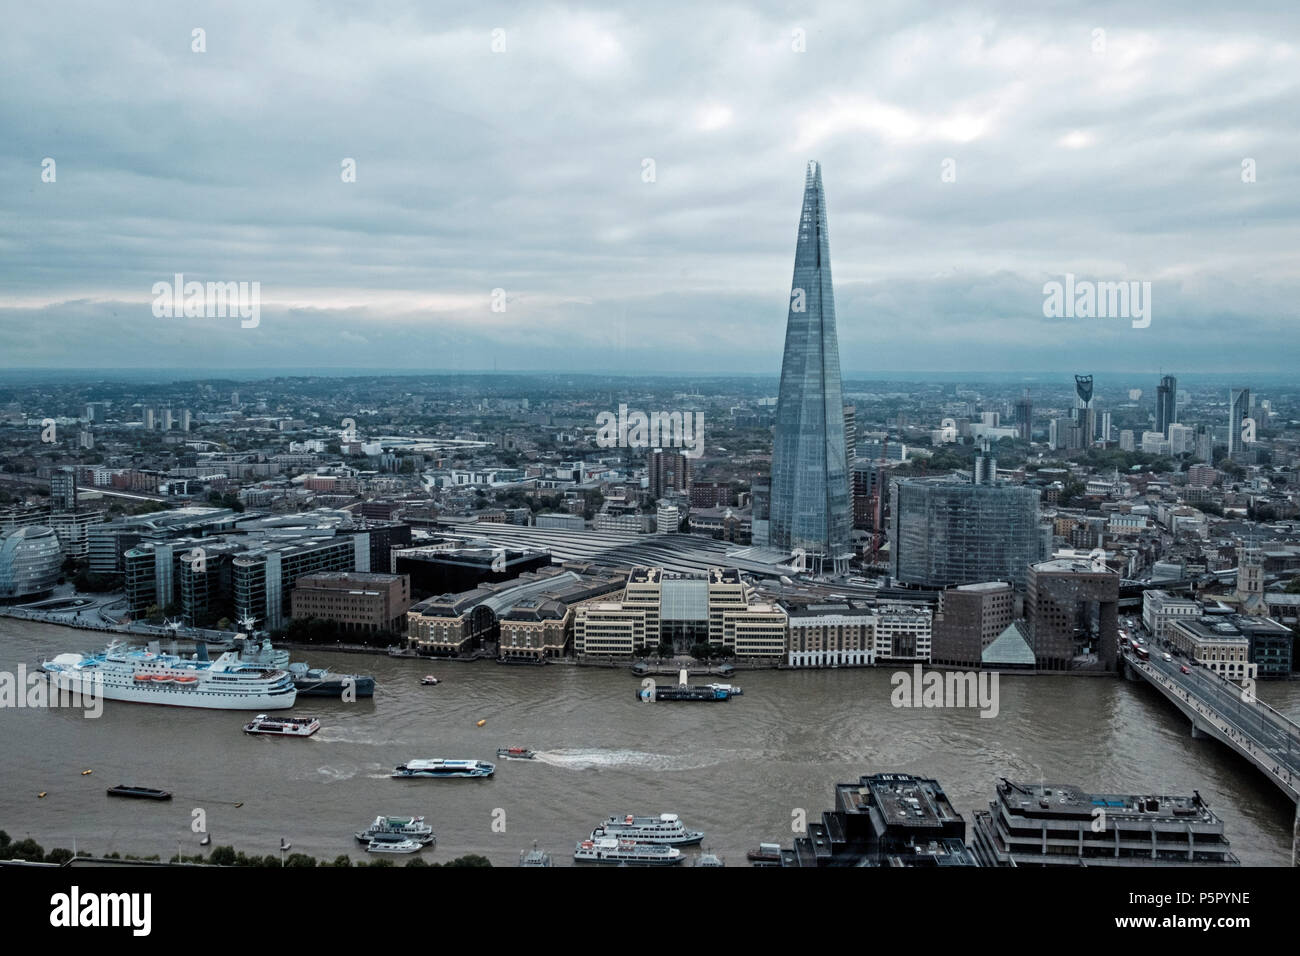 Vue aérienne de l'Écharde de entourant les bâtiments commerciaux, des gratte-ciel de Londres et la Tamise. Ciel nuageux. L'espace d'impression. Bateaux sur la rivière. Sep 2017 Banque D'Images